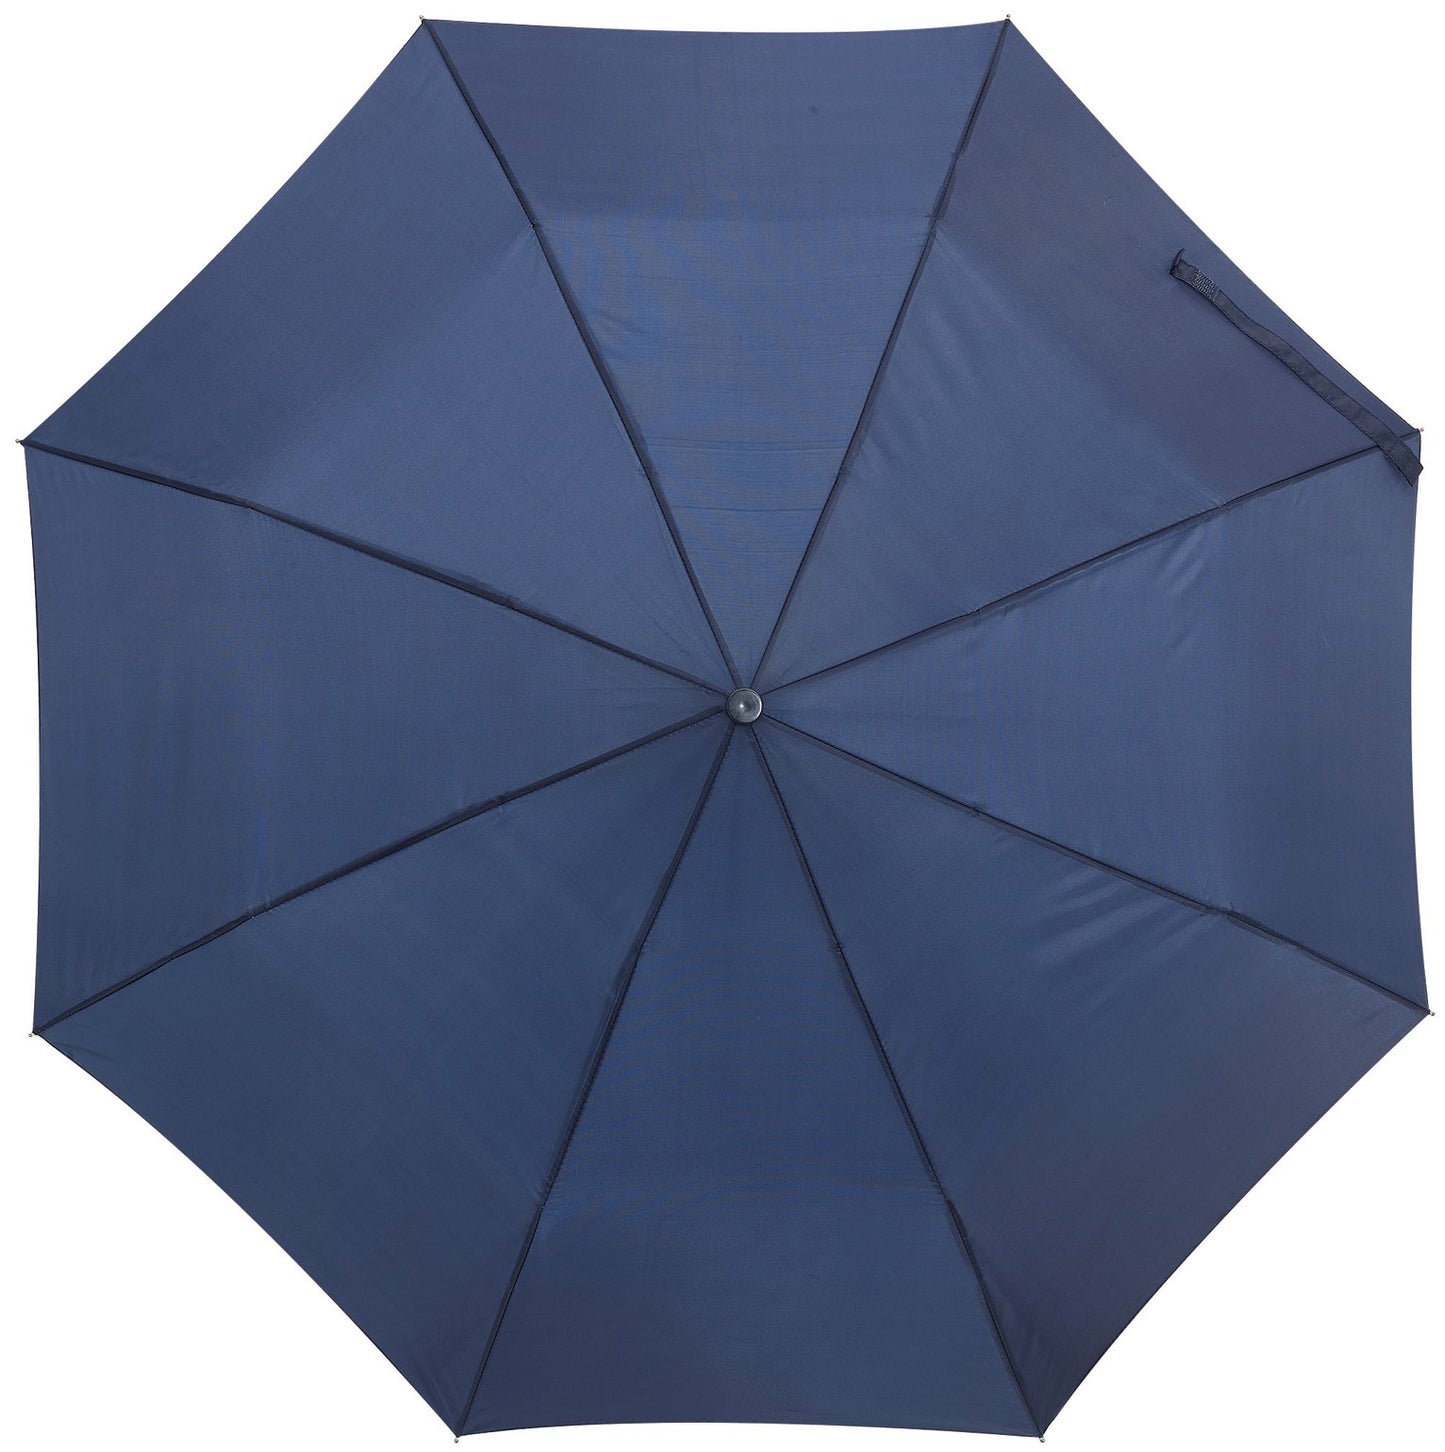 Μπλε μαρίν ομπρέλα βροχής, αυτόματη, μίνι.